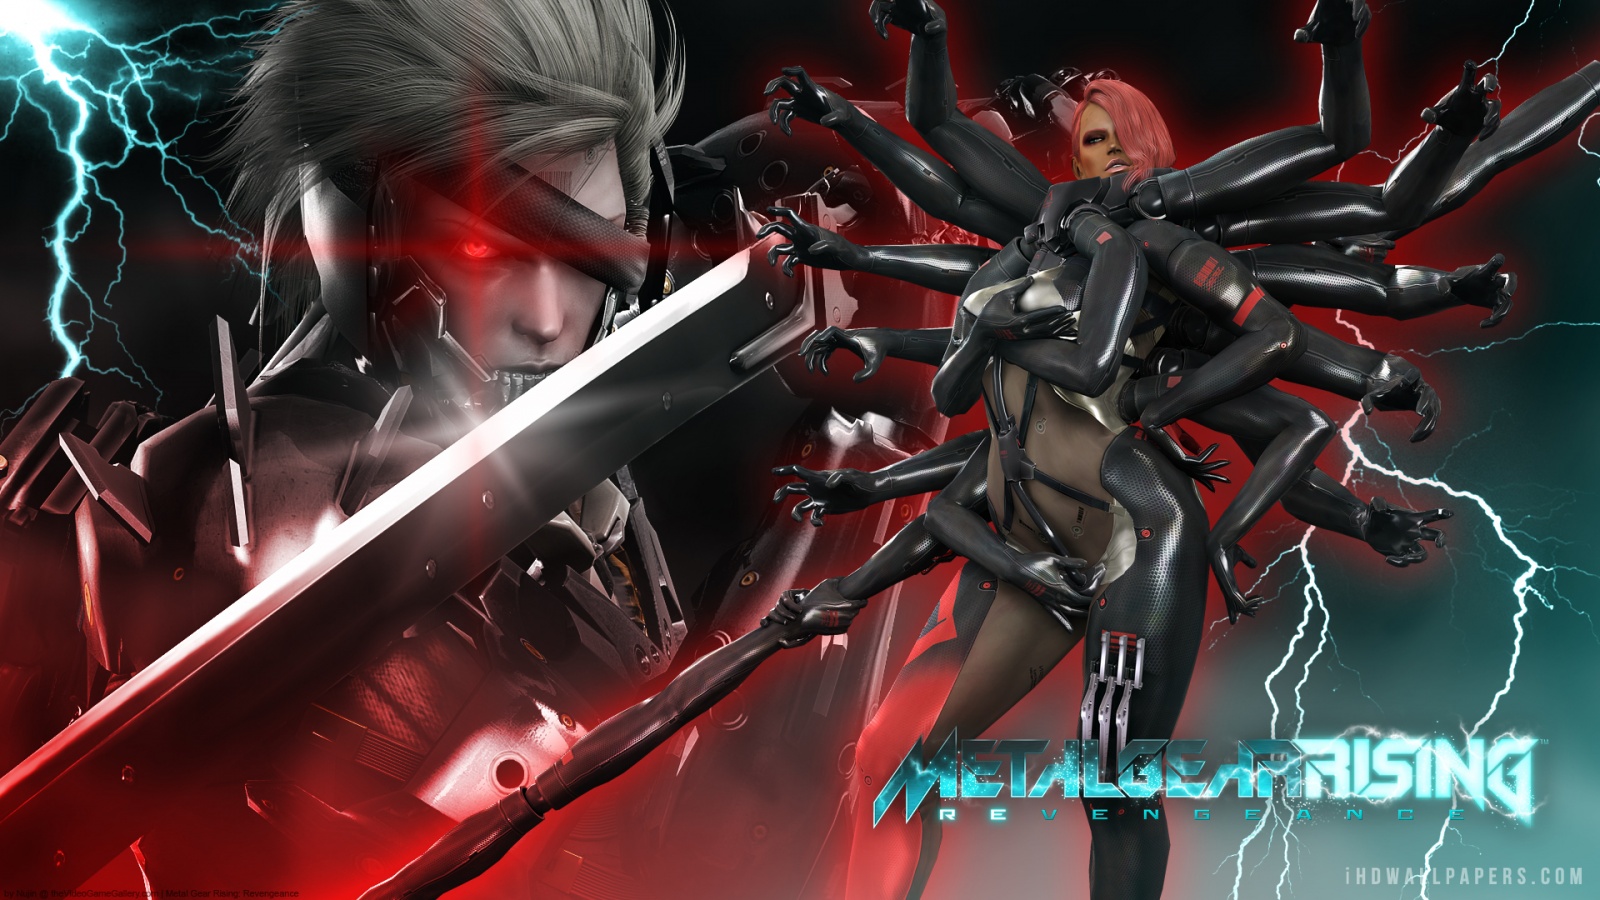 Metal Gear Solid Metal Gear Rising Revengeance HD Wallpaper   iHD